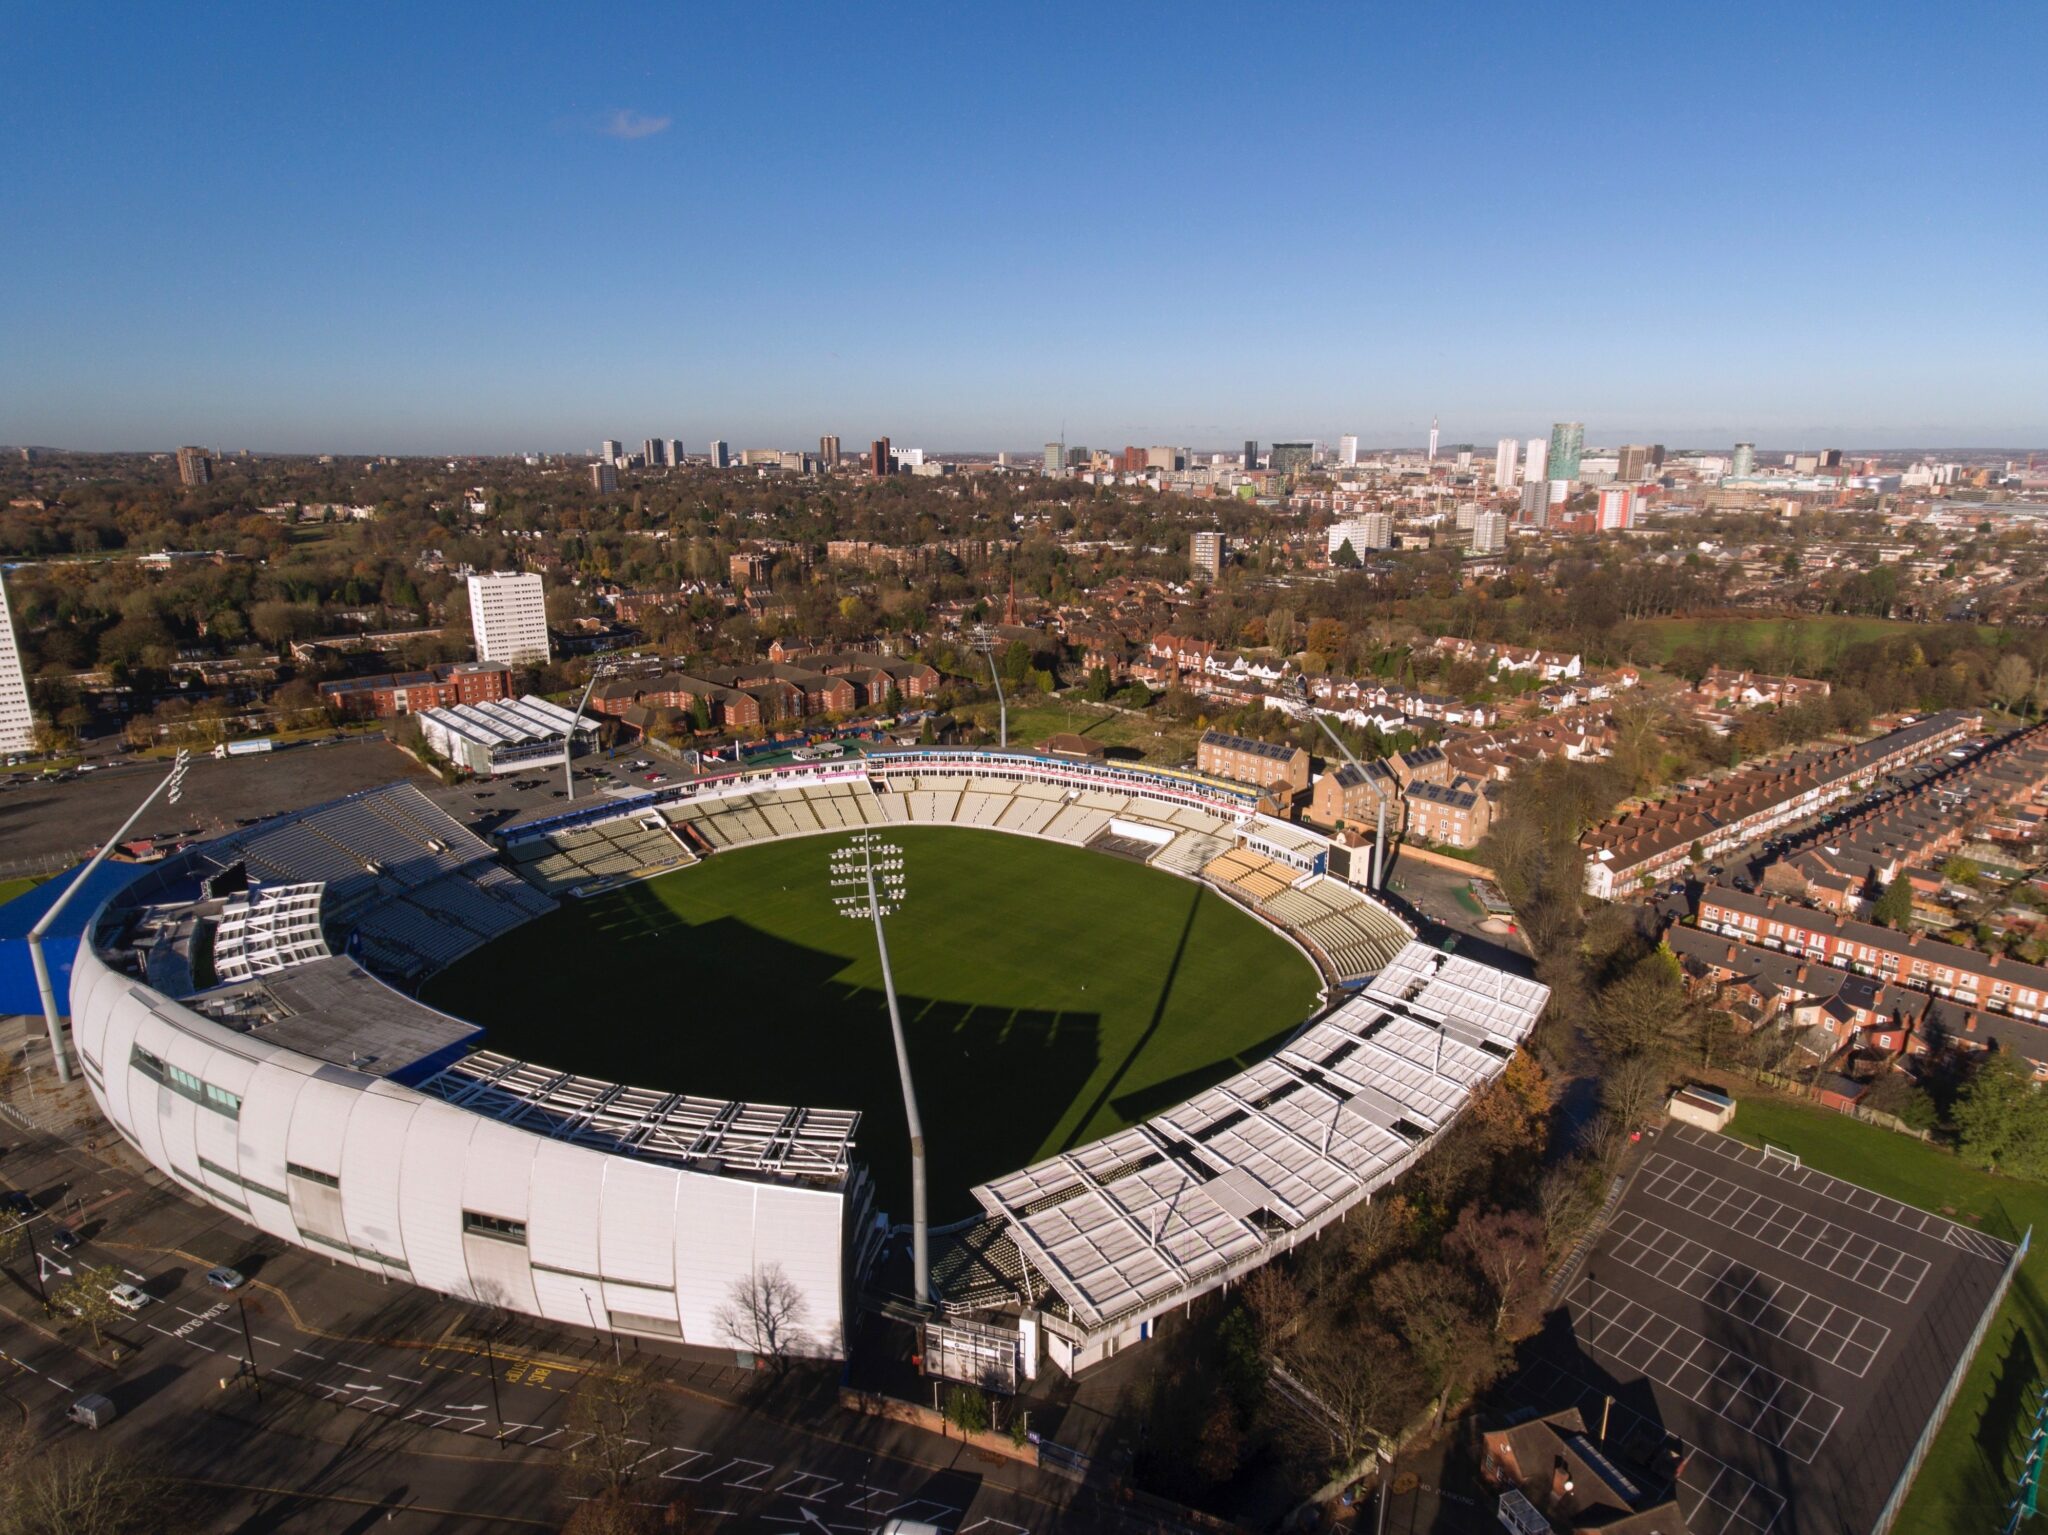 Edgbaston stadium from above